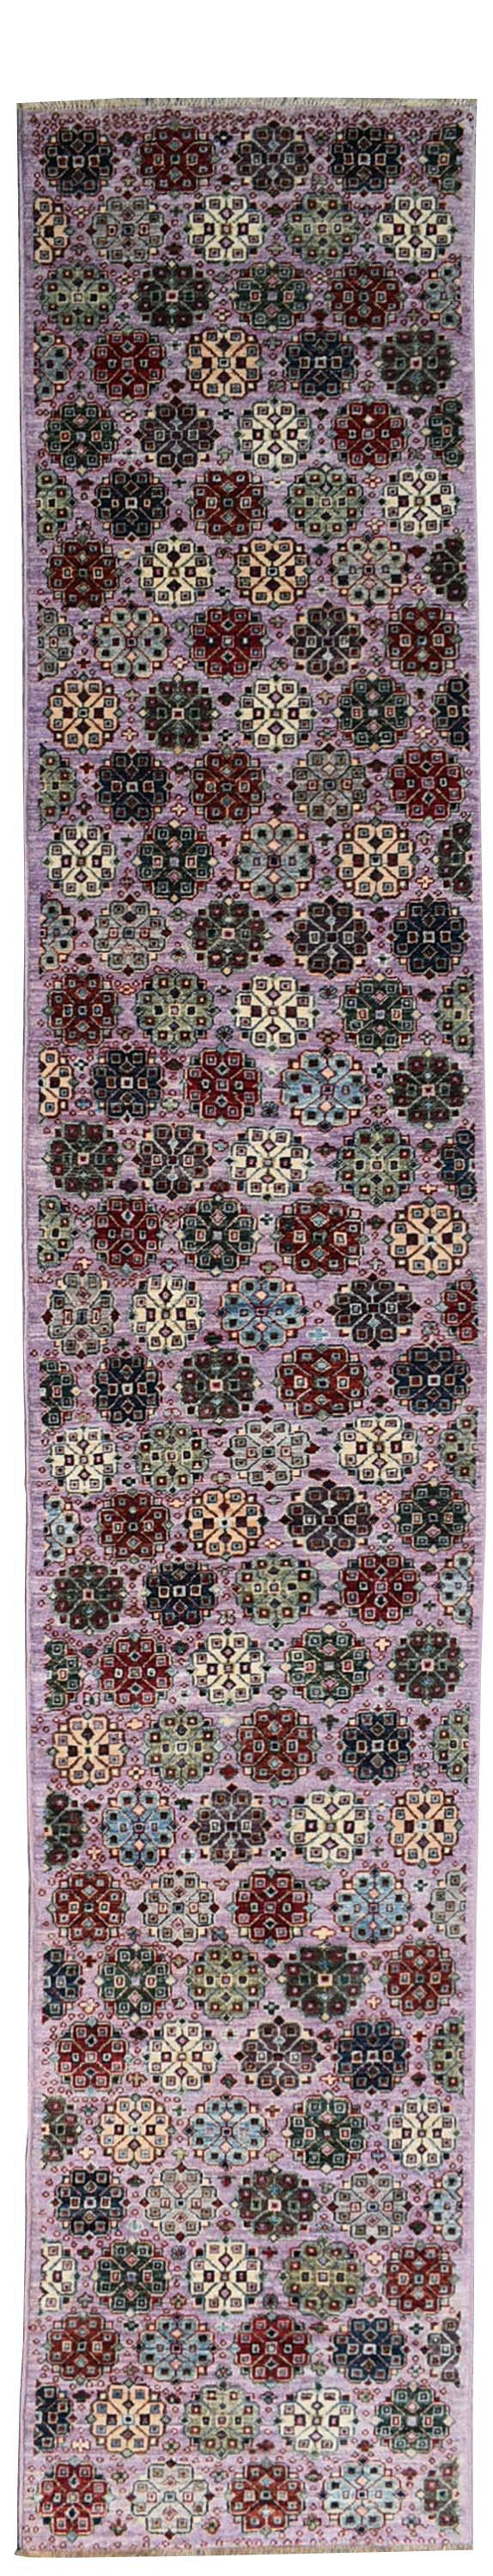 Khotan Garden Handwoven Traditional Rug